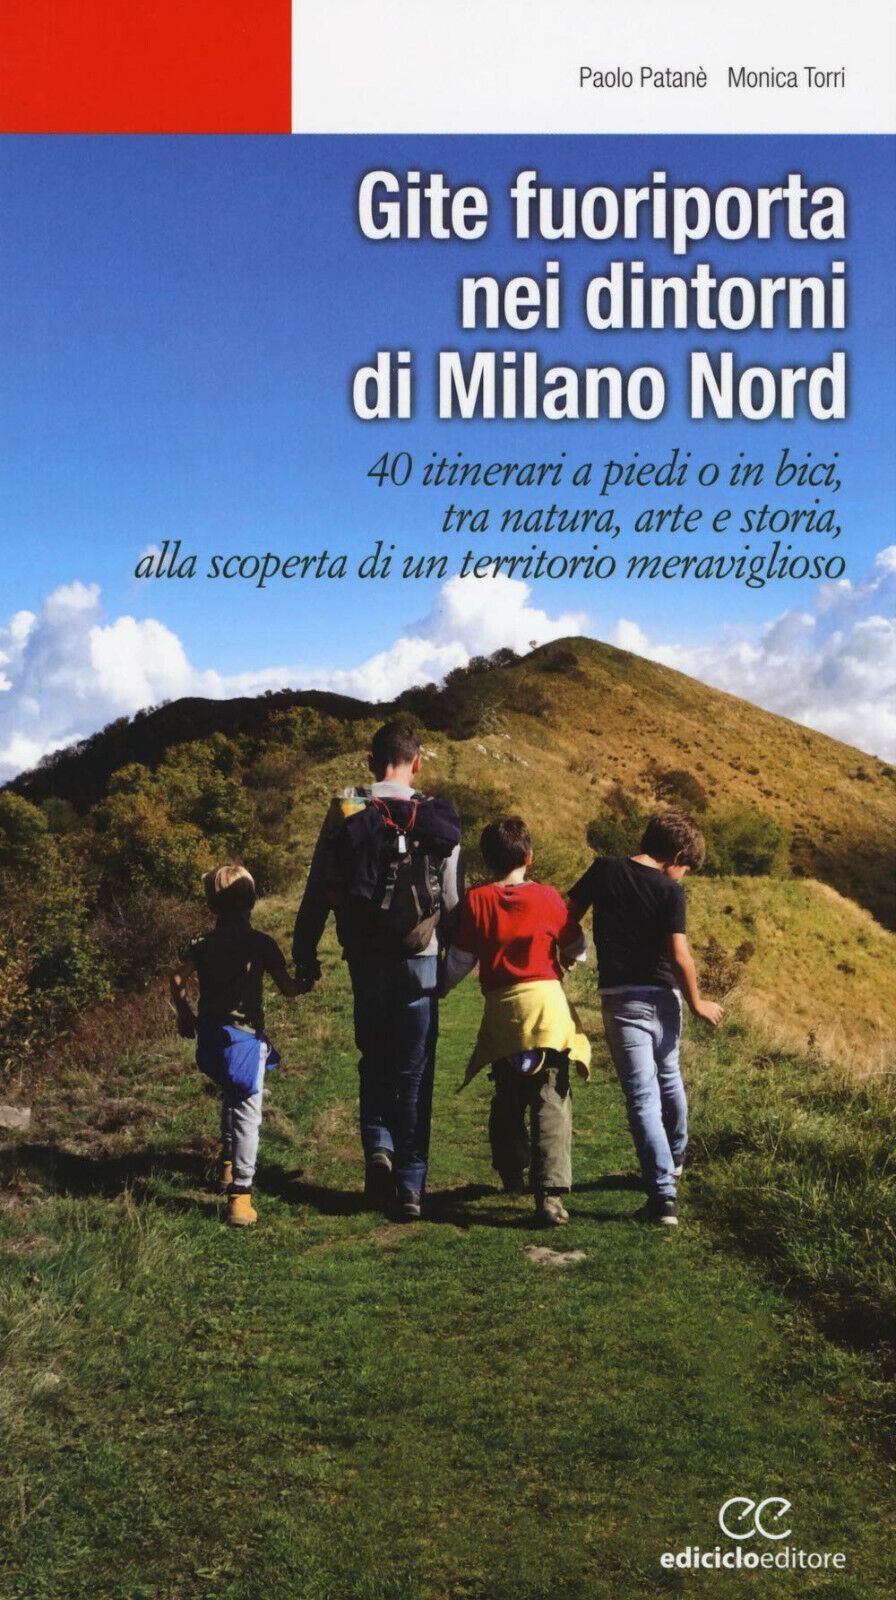 Gite fuoriporta nei dintorni di Milano nord - Paolo Patan?, Monica Torri - 2019 libro usato